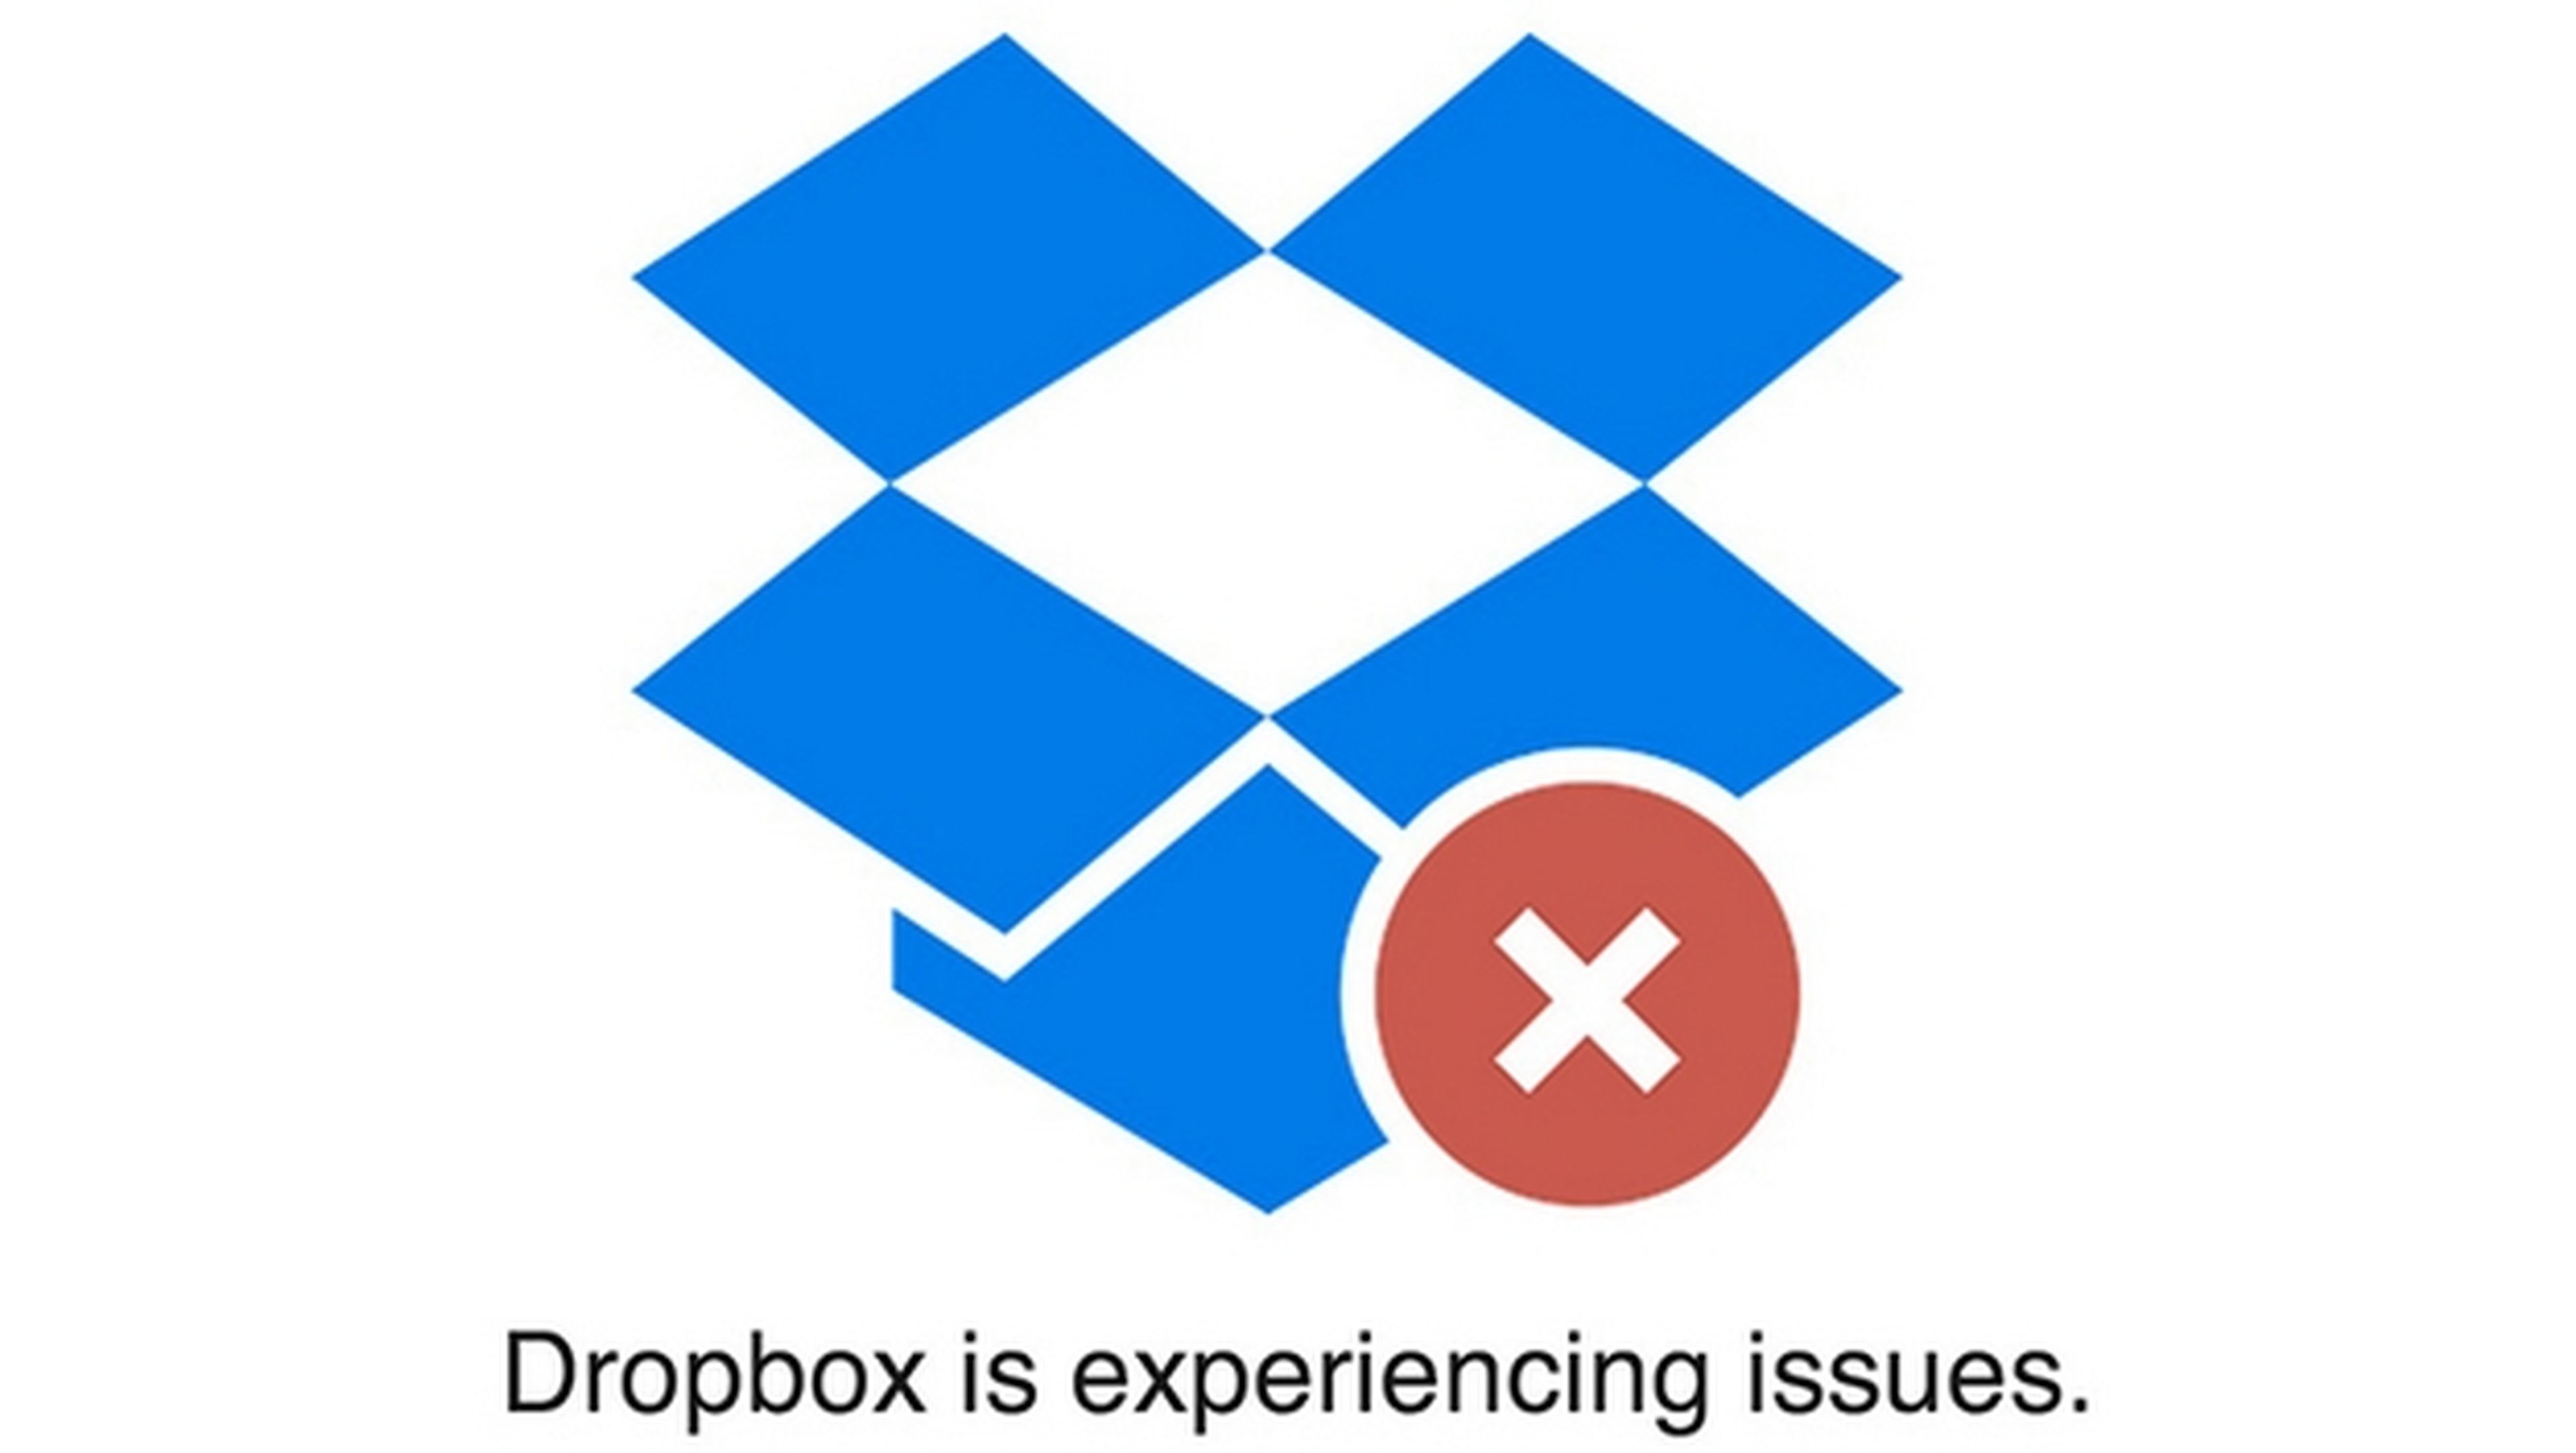 Dropbox sin servicio durante varias horas, niega ataque hacker